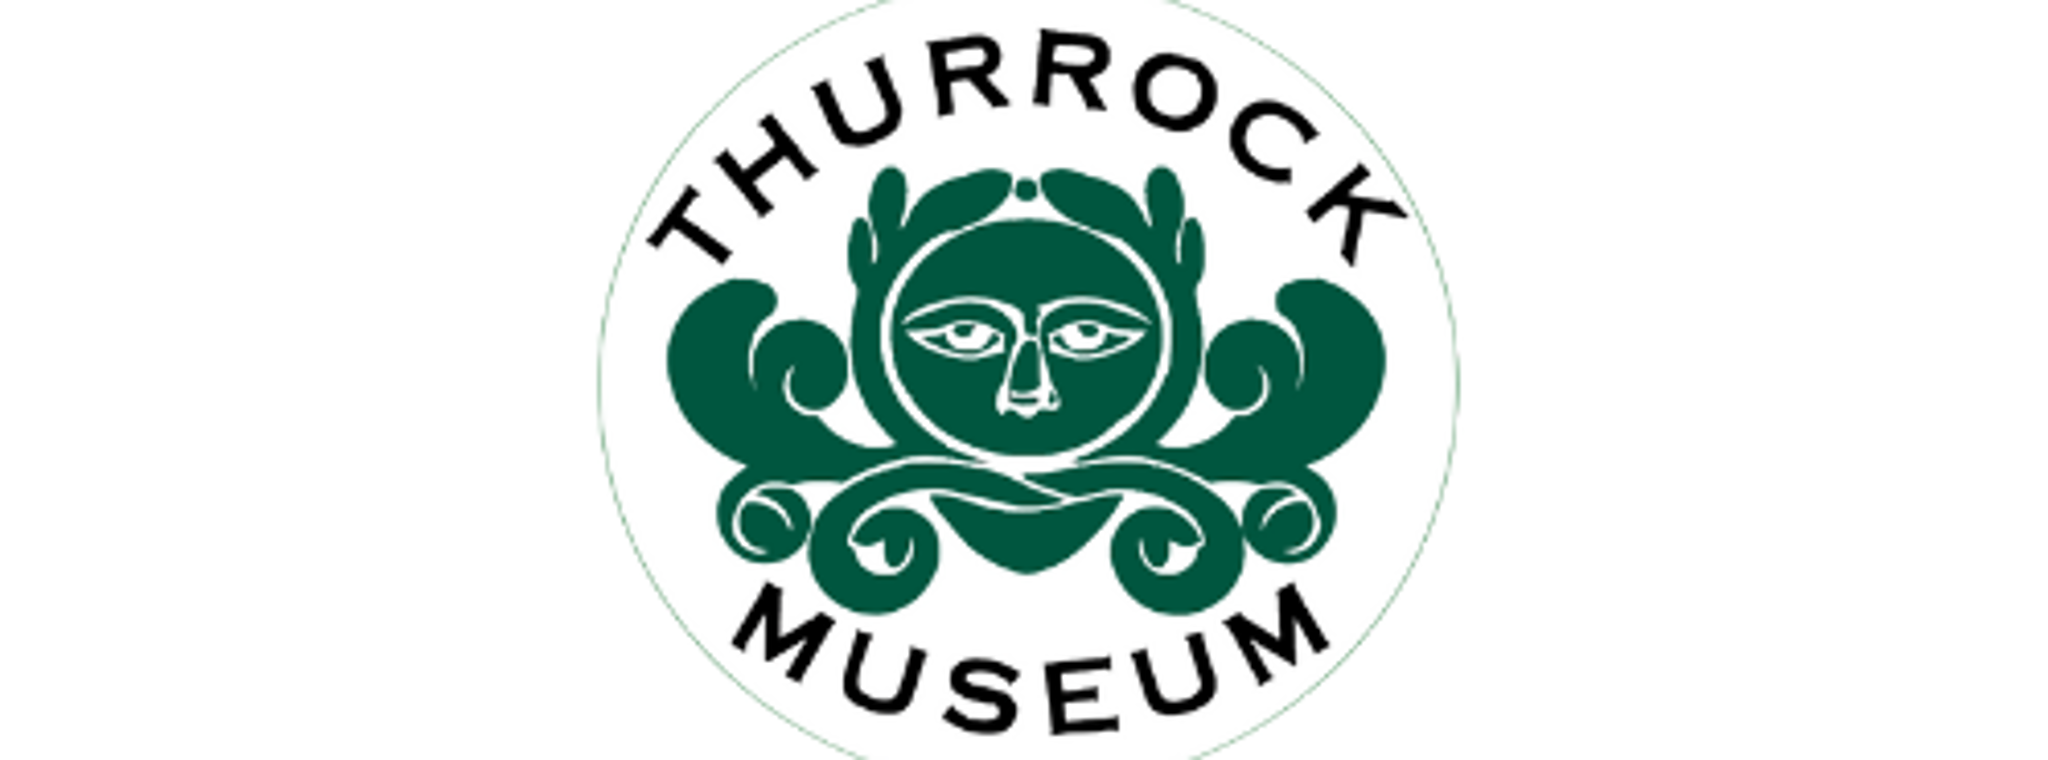 Thurrock Museum Logo